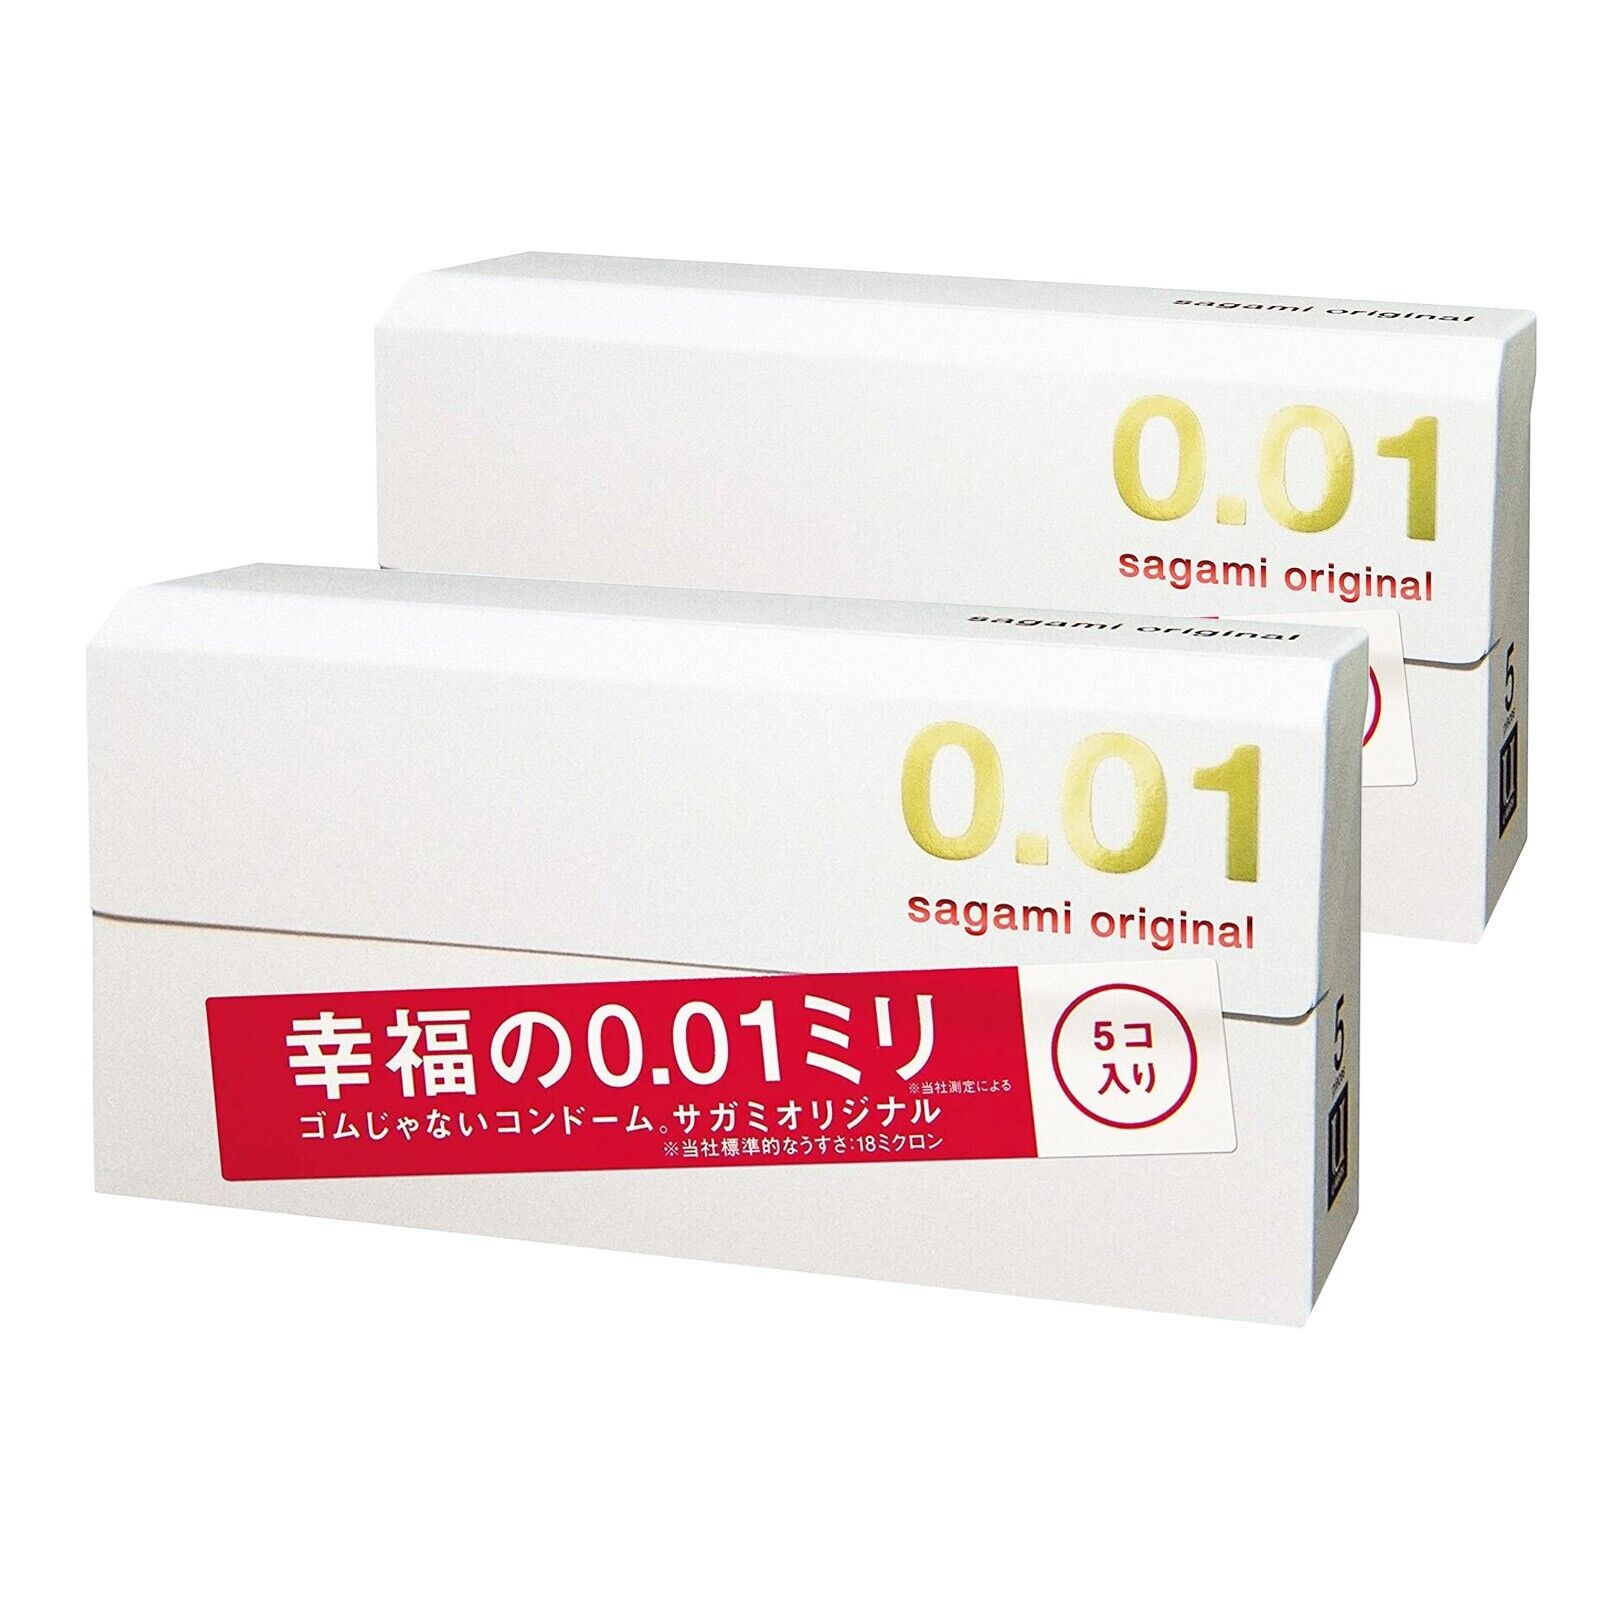 Sagami Original 001 Ultra Thin Condoms 0.01mm 5 Pcs (2 BOXES) US Seller